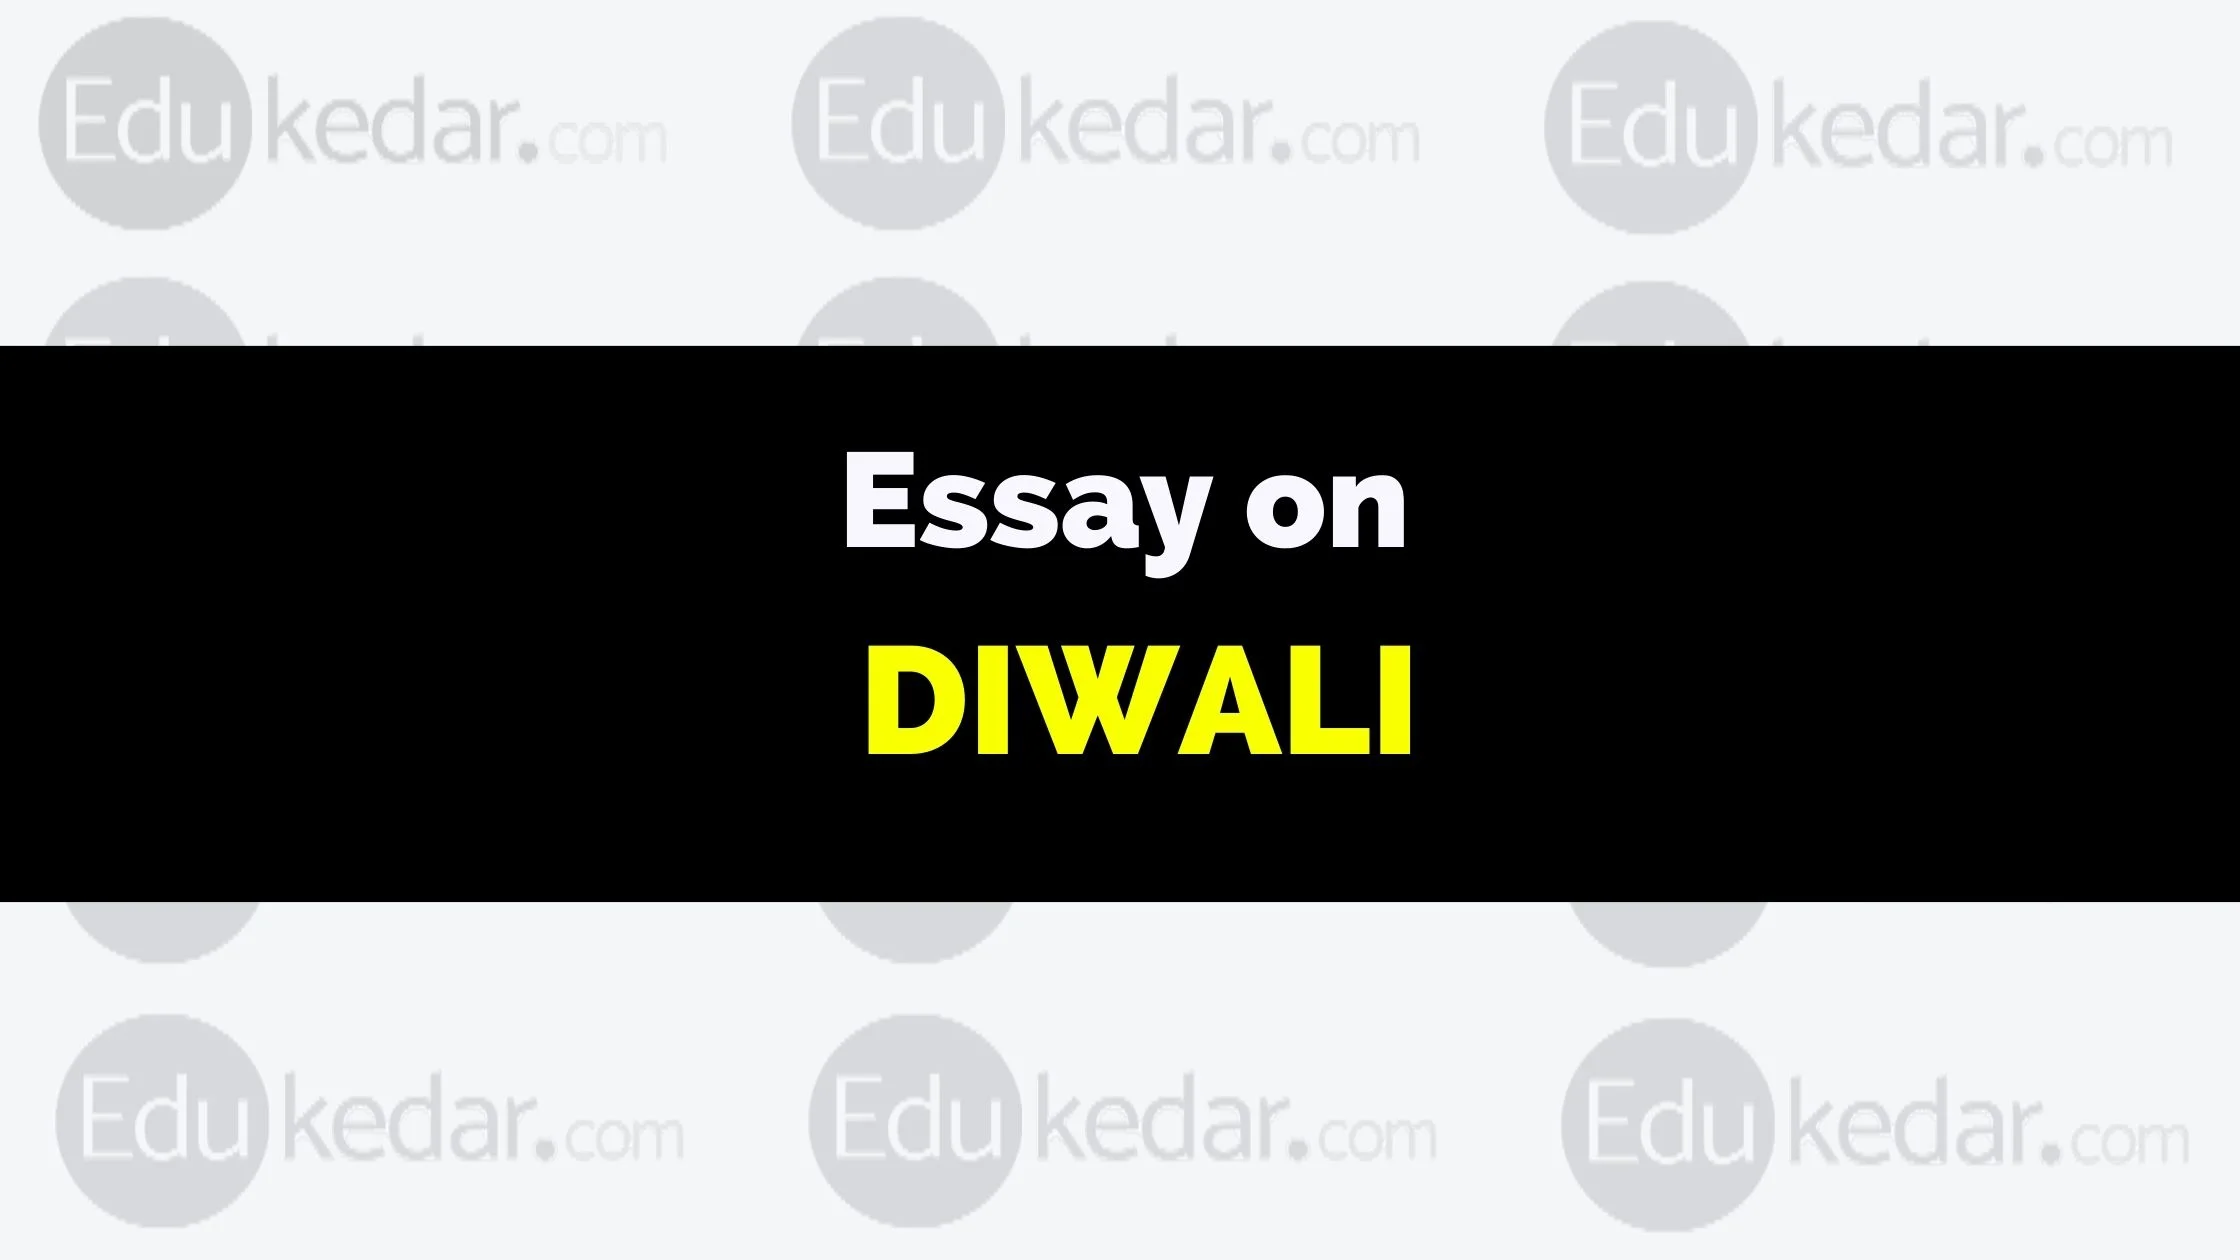 diwali essay on 150 words